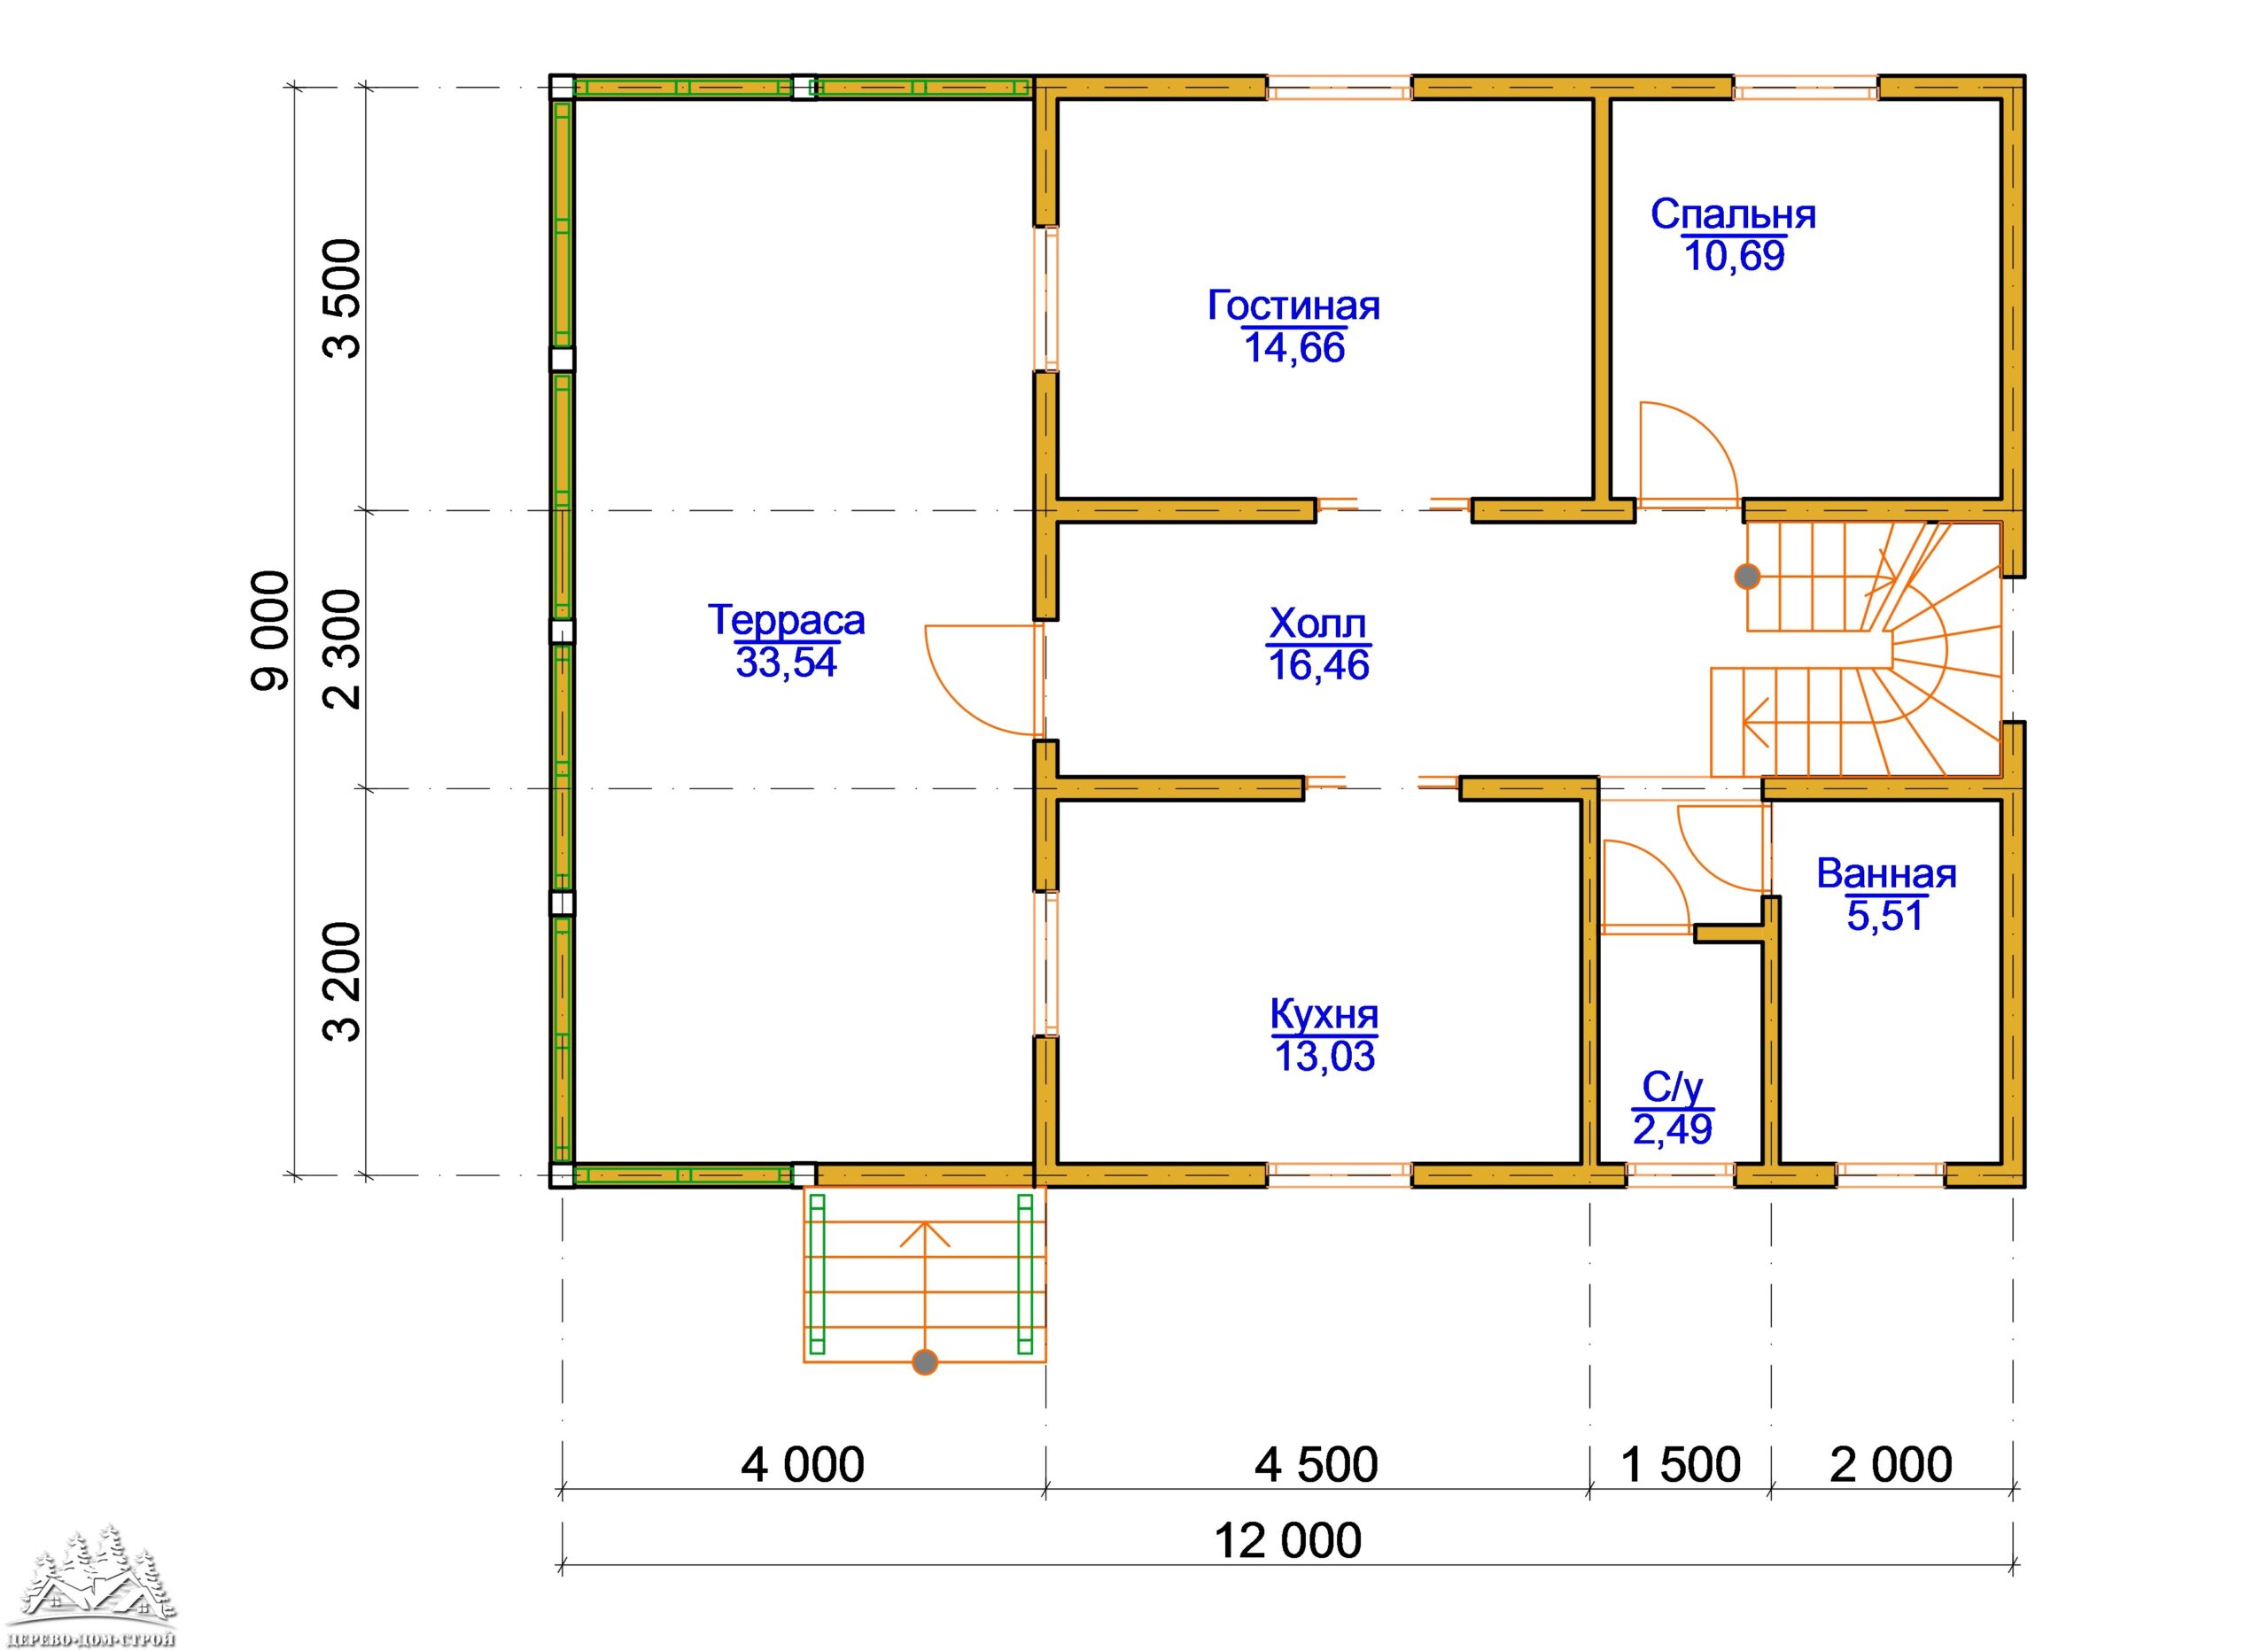 Проект одноэтажного деревянного  дома с мансардой и террасой  из бруса – ДБС 408